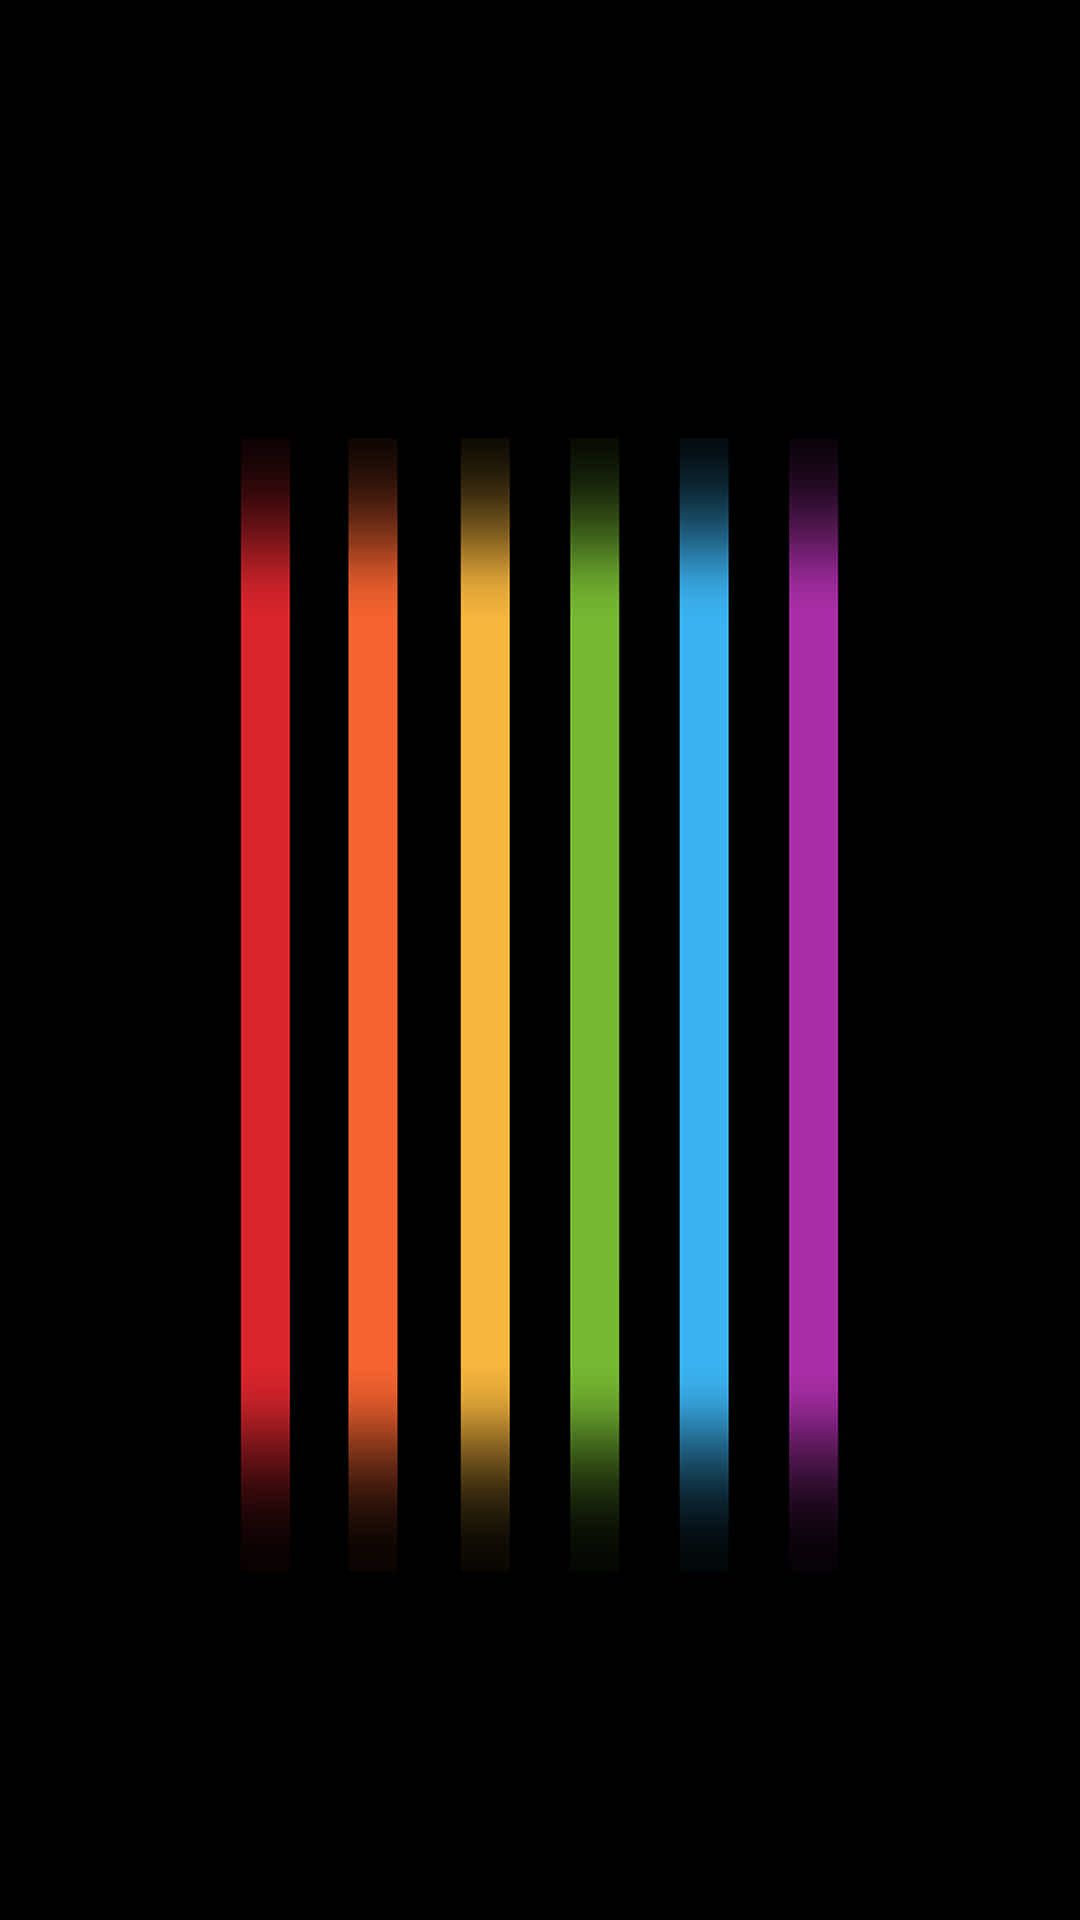 sfondi per iphone di gay pride,nero,viola,rosso,verde,leggero